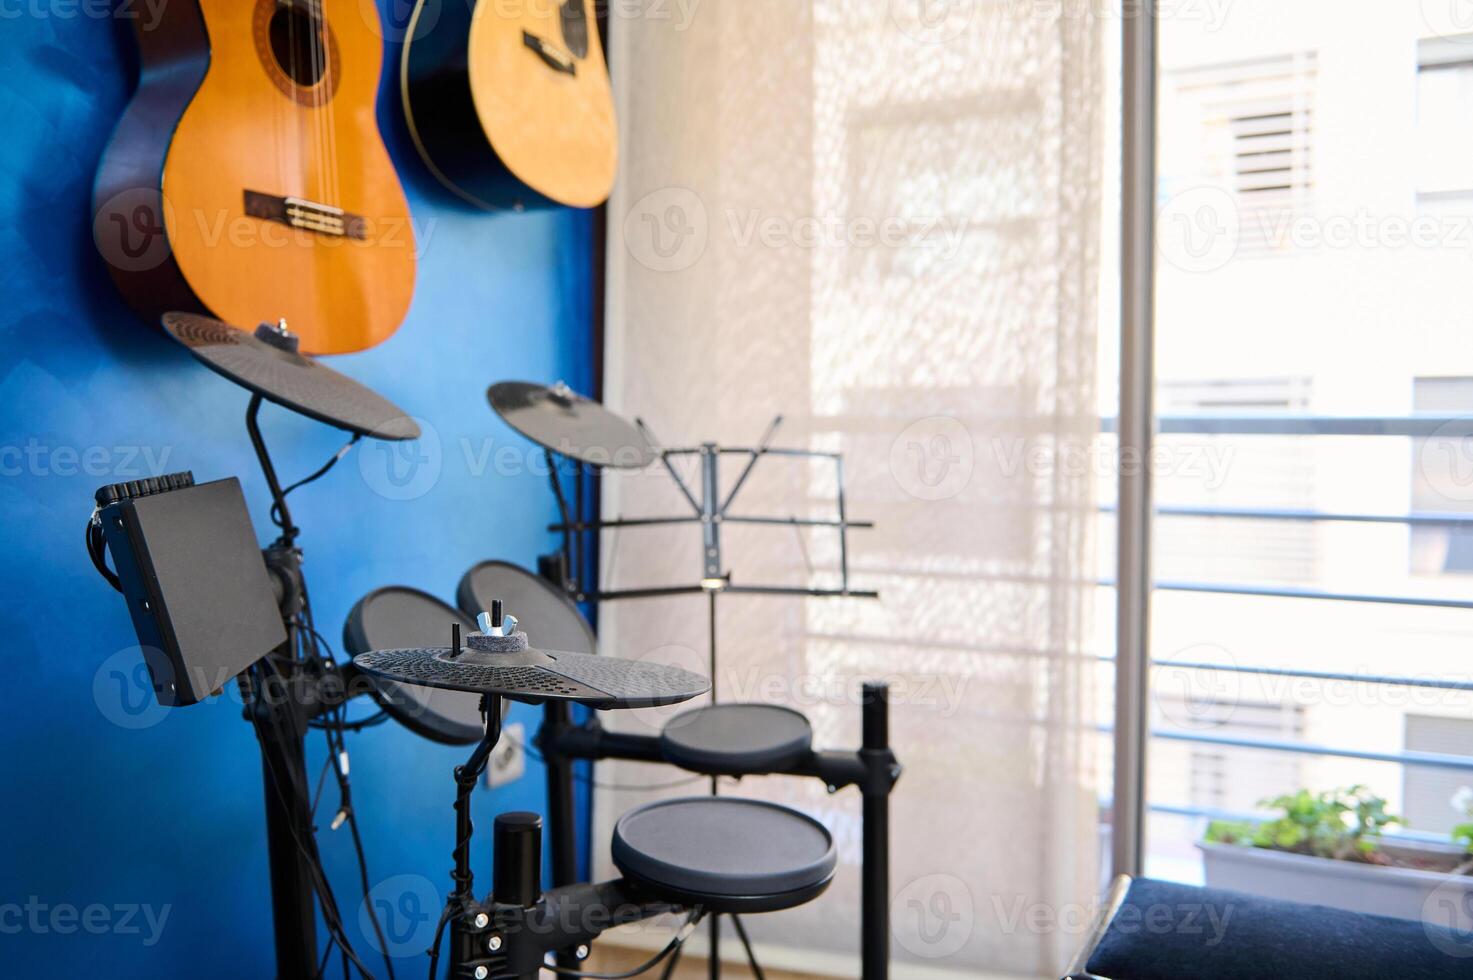 modern interiör av en musik studio för Hem använda sig av. akustisk och elektrisk gitarrer hängande på blå Färg vägg och trumma utrustning med svart cymbaler. musikers rum för spelar och inlärning musik. kopia ad Plats foto